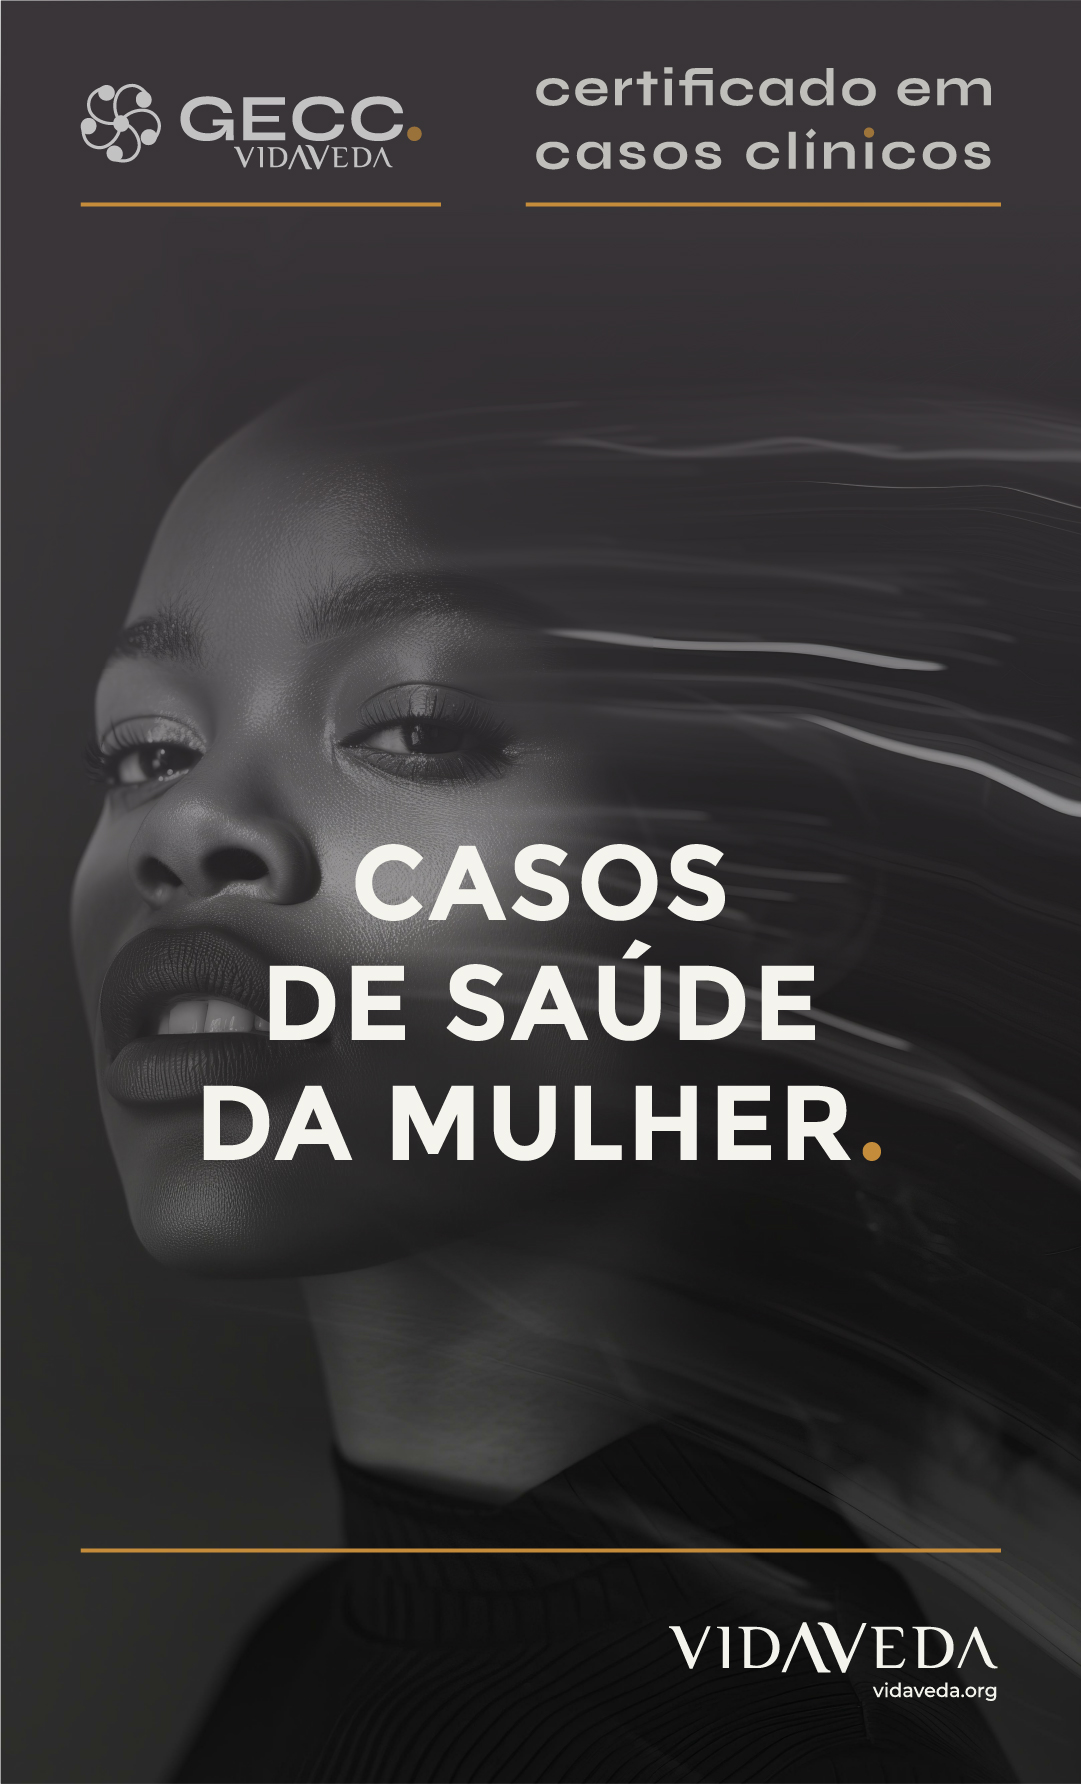 GECC -  CASOS DE SAÚDE DA MULHER